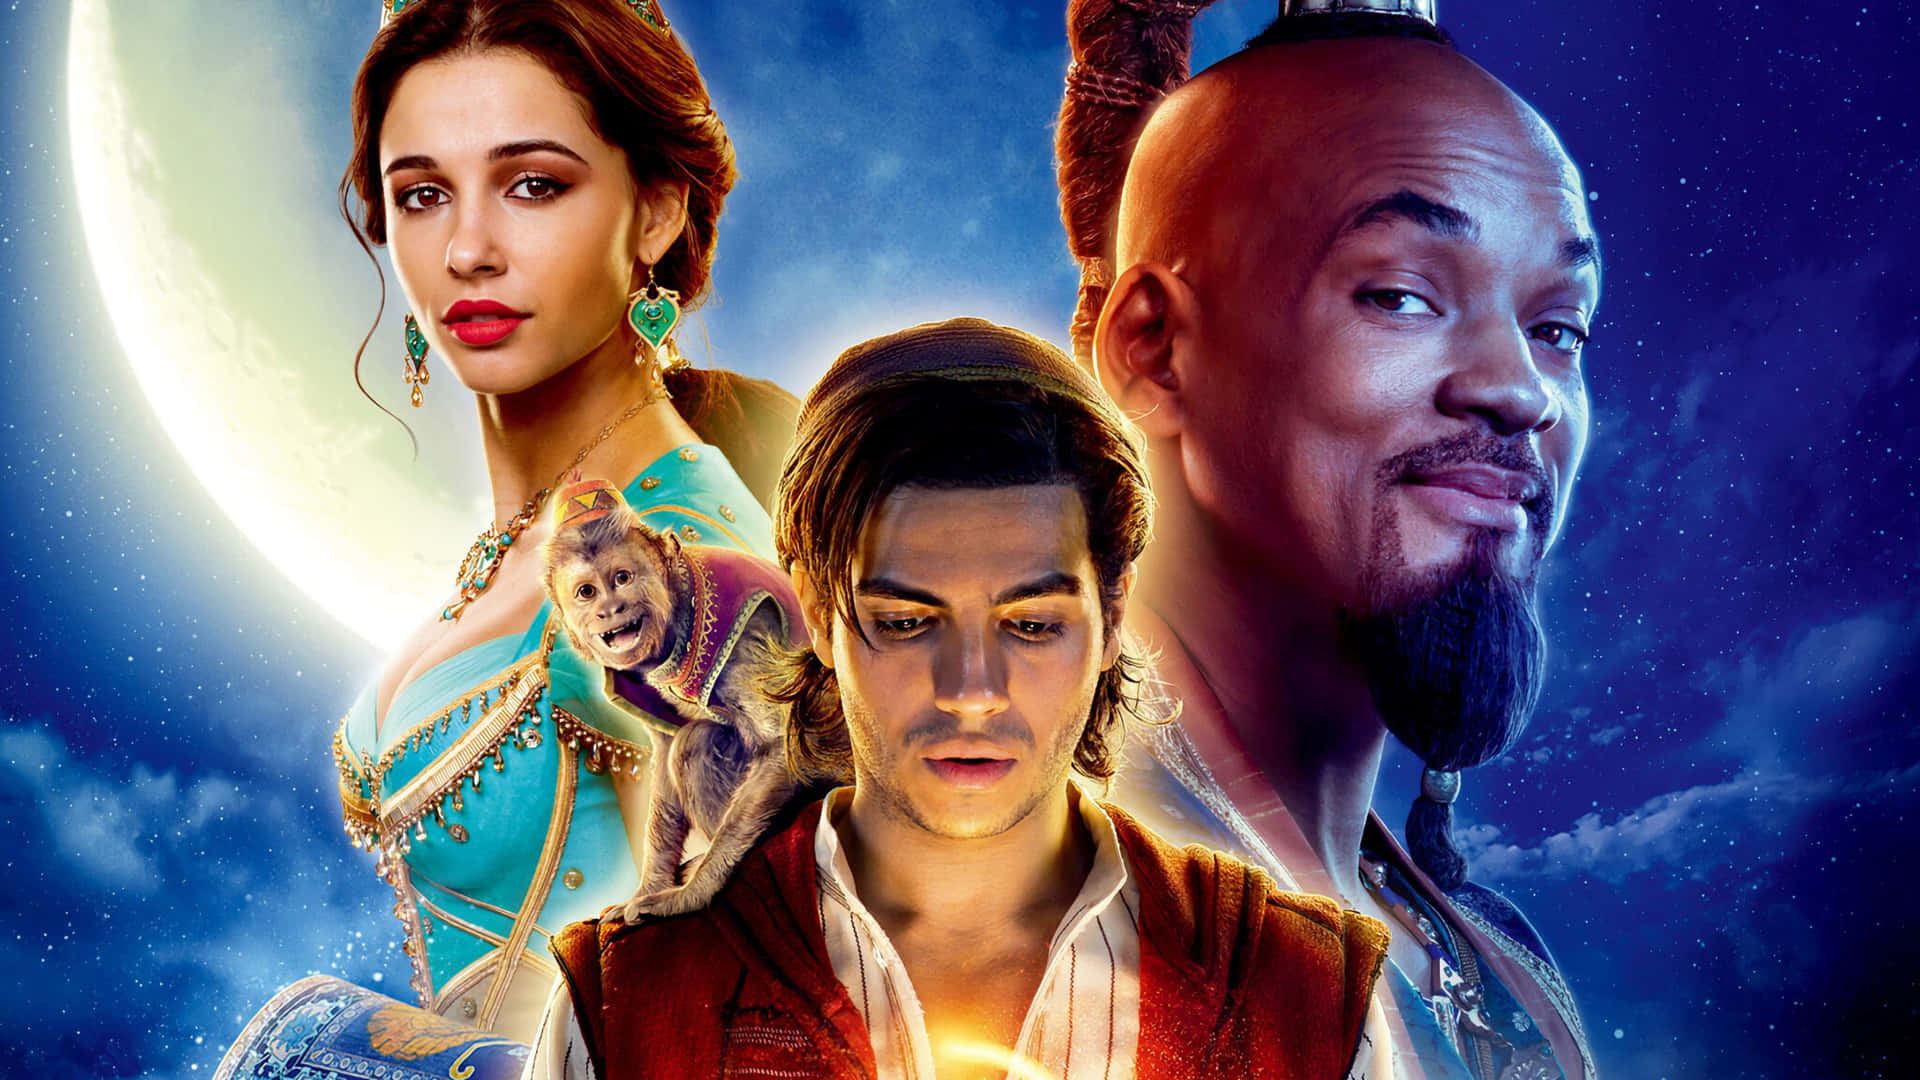 Milagrosoescape: Aladdin Esquiva A Los Guardias Durante Su Audaz Aventura En Agrabah.